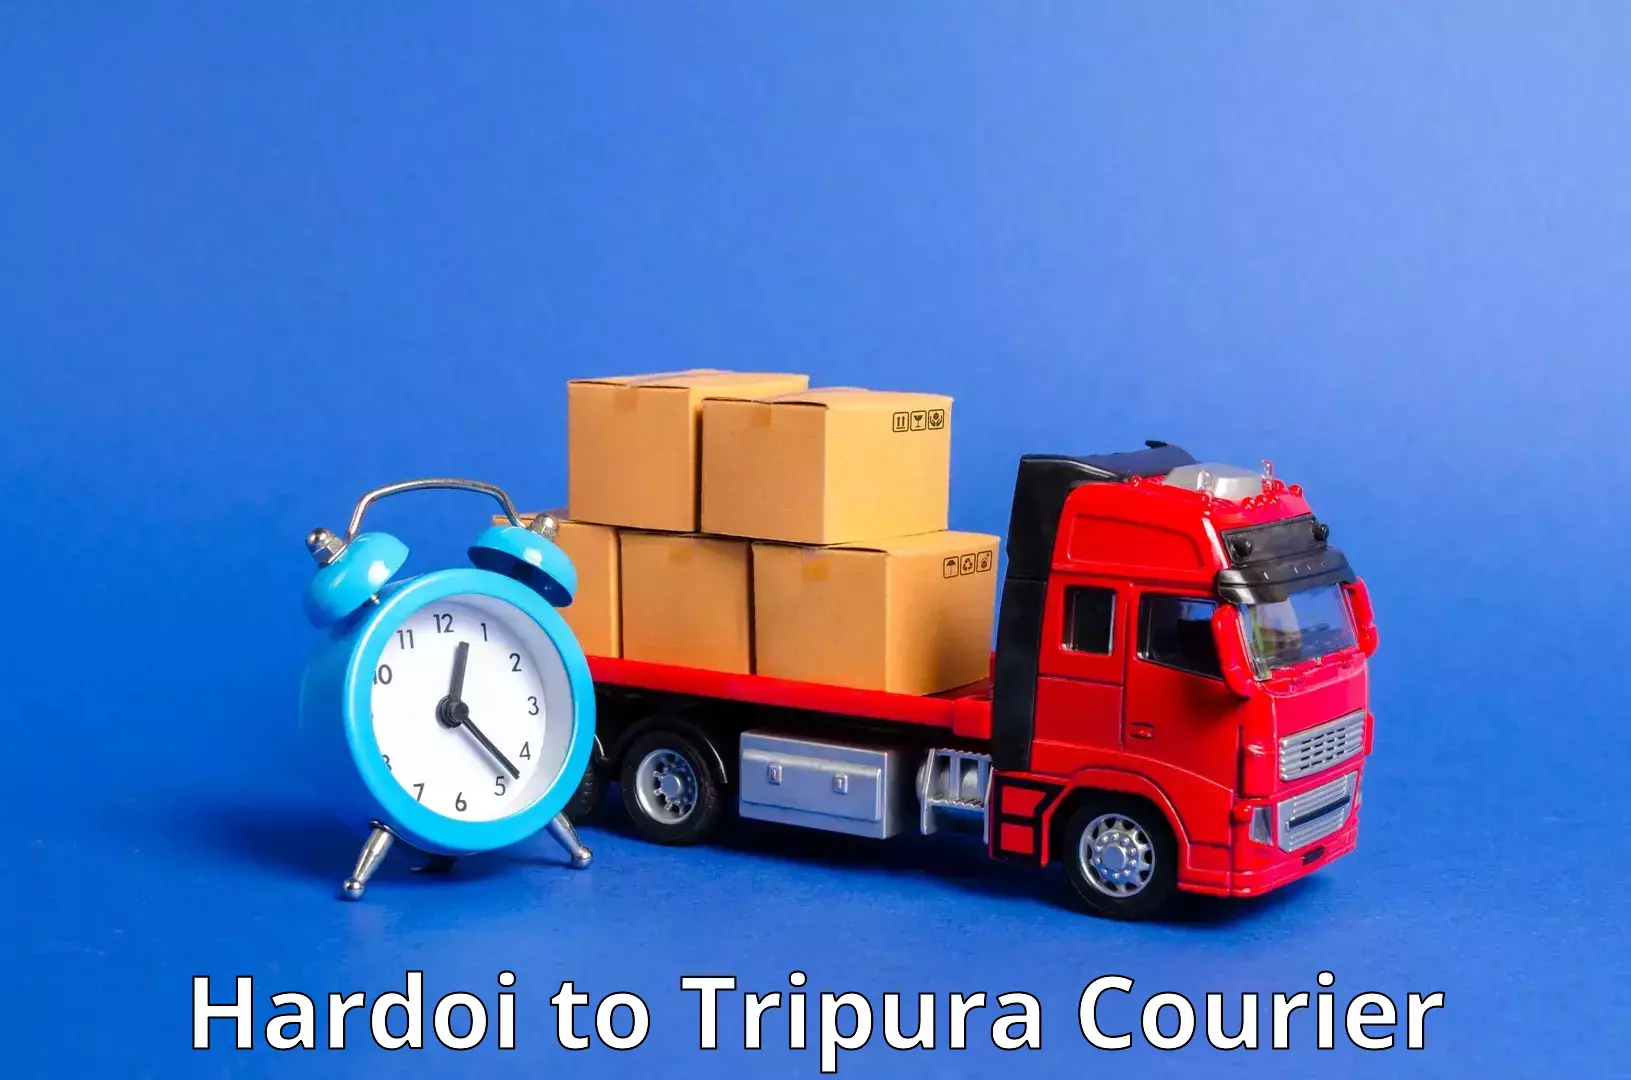 Comprehensive shipping services Hardoi to Bishalgarh